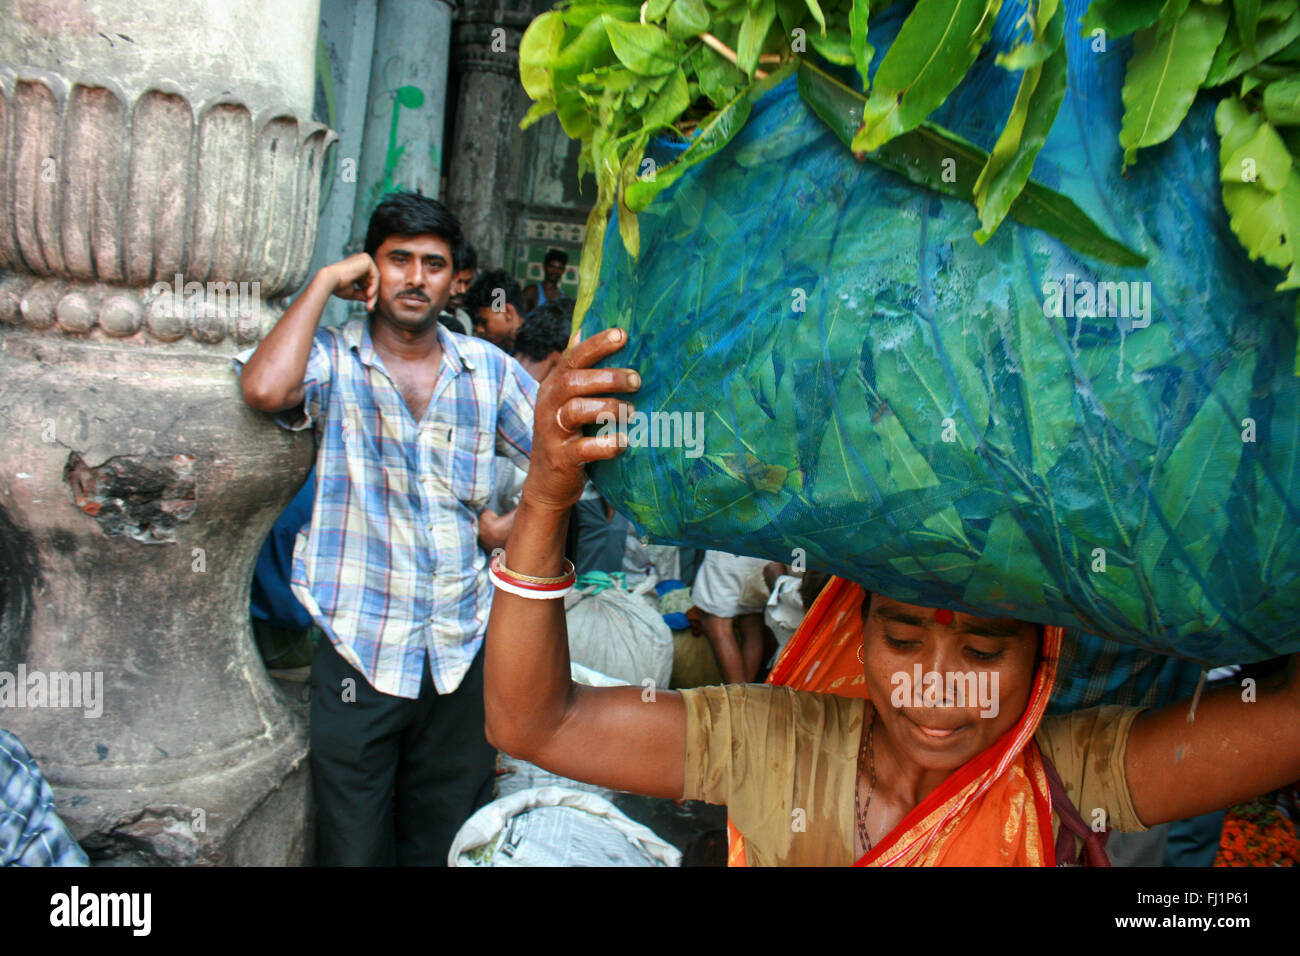 Frau, die schwere Tasche - harte Arbeit bei Kalkutta Blumenmarkt, Indien. Ein Mann wacht. Stockfoto